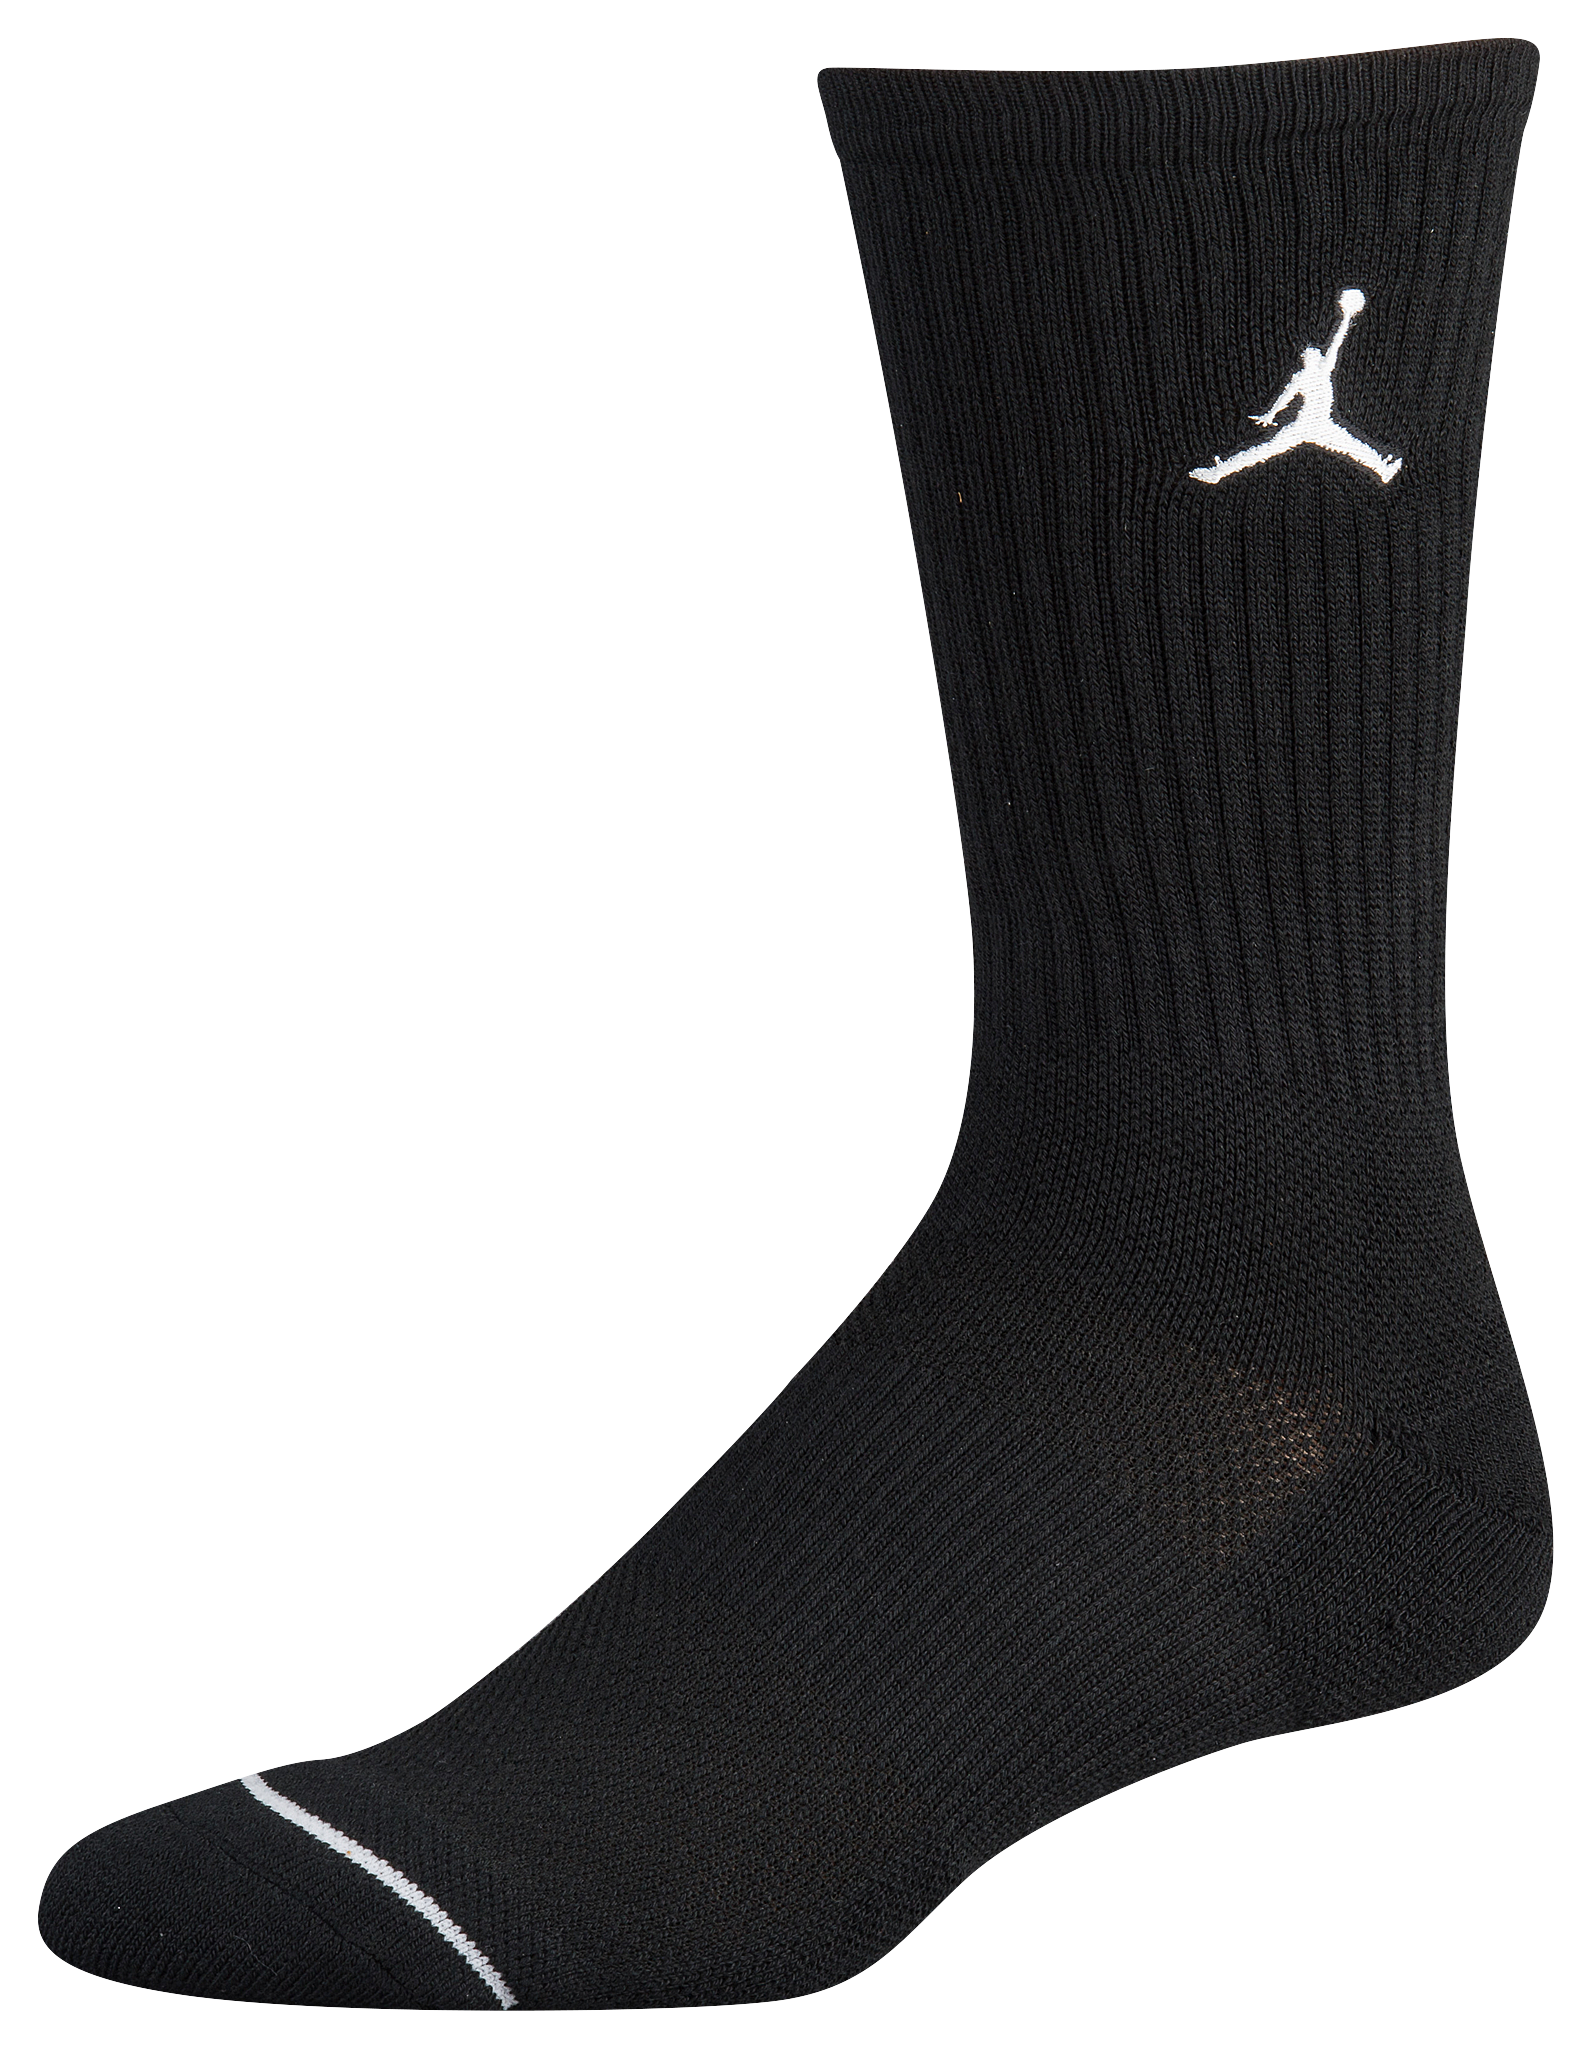 cheap jordan socks